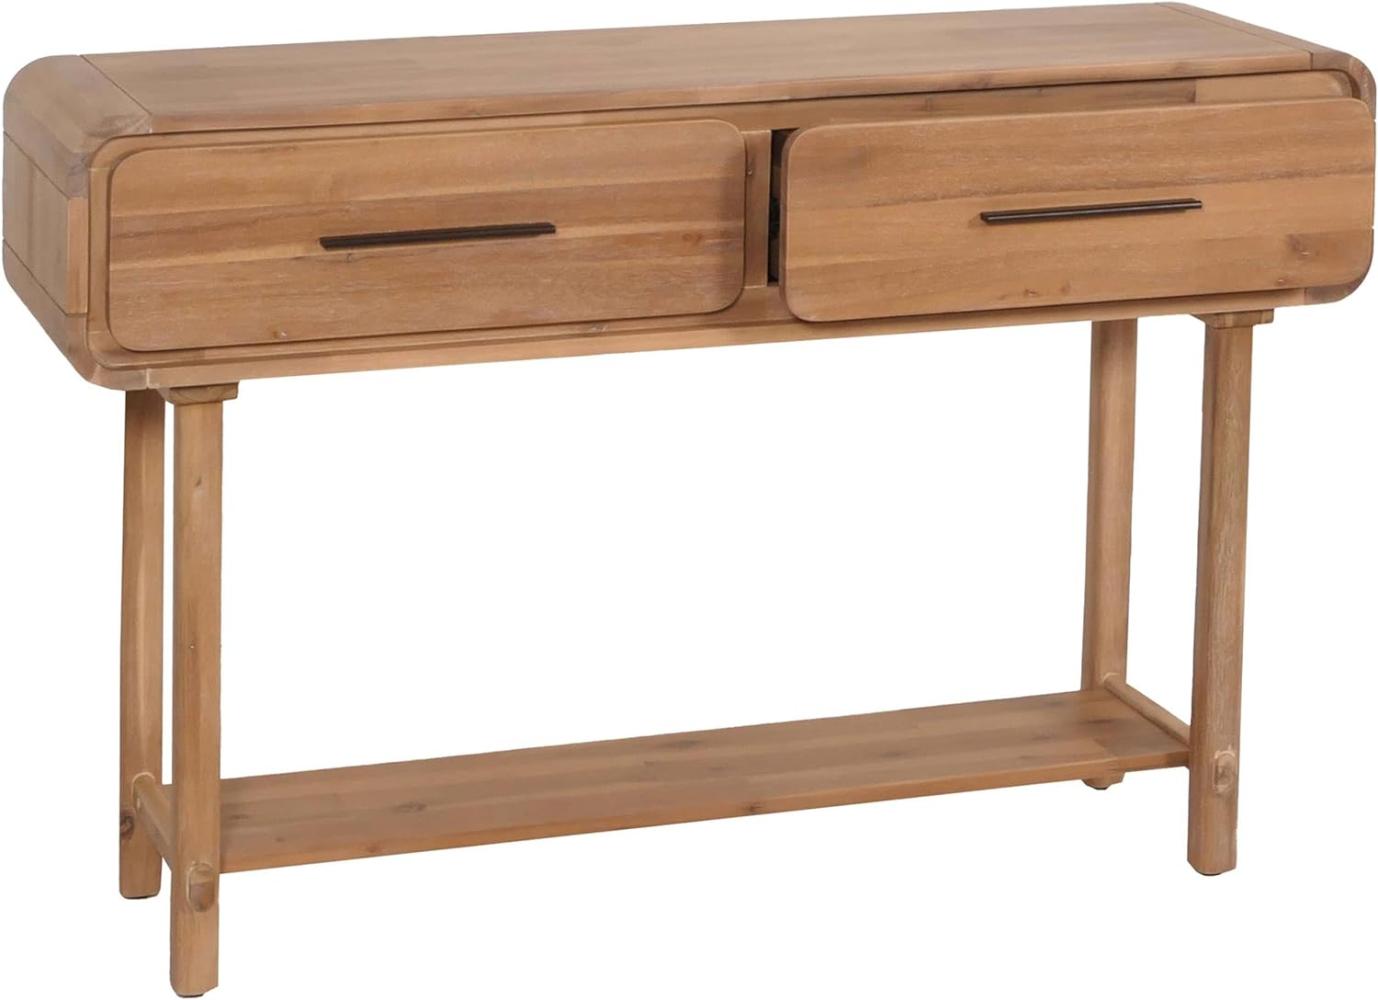 Konsolentisch HWC-M47, Telefontisch Beistelltisch Ablagetisch, Schublade, Akazie Massiv-Holz gebeizt 80x120x35cm 22kg Bild 1